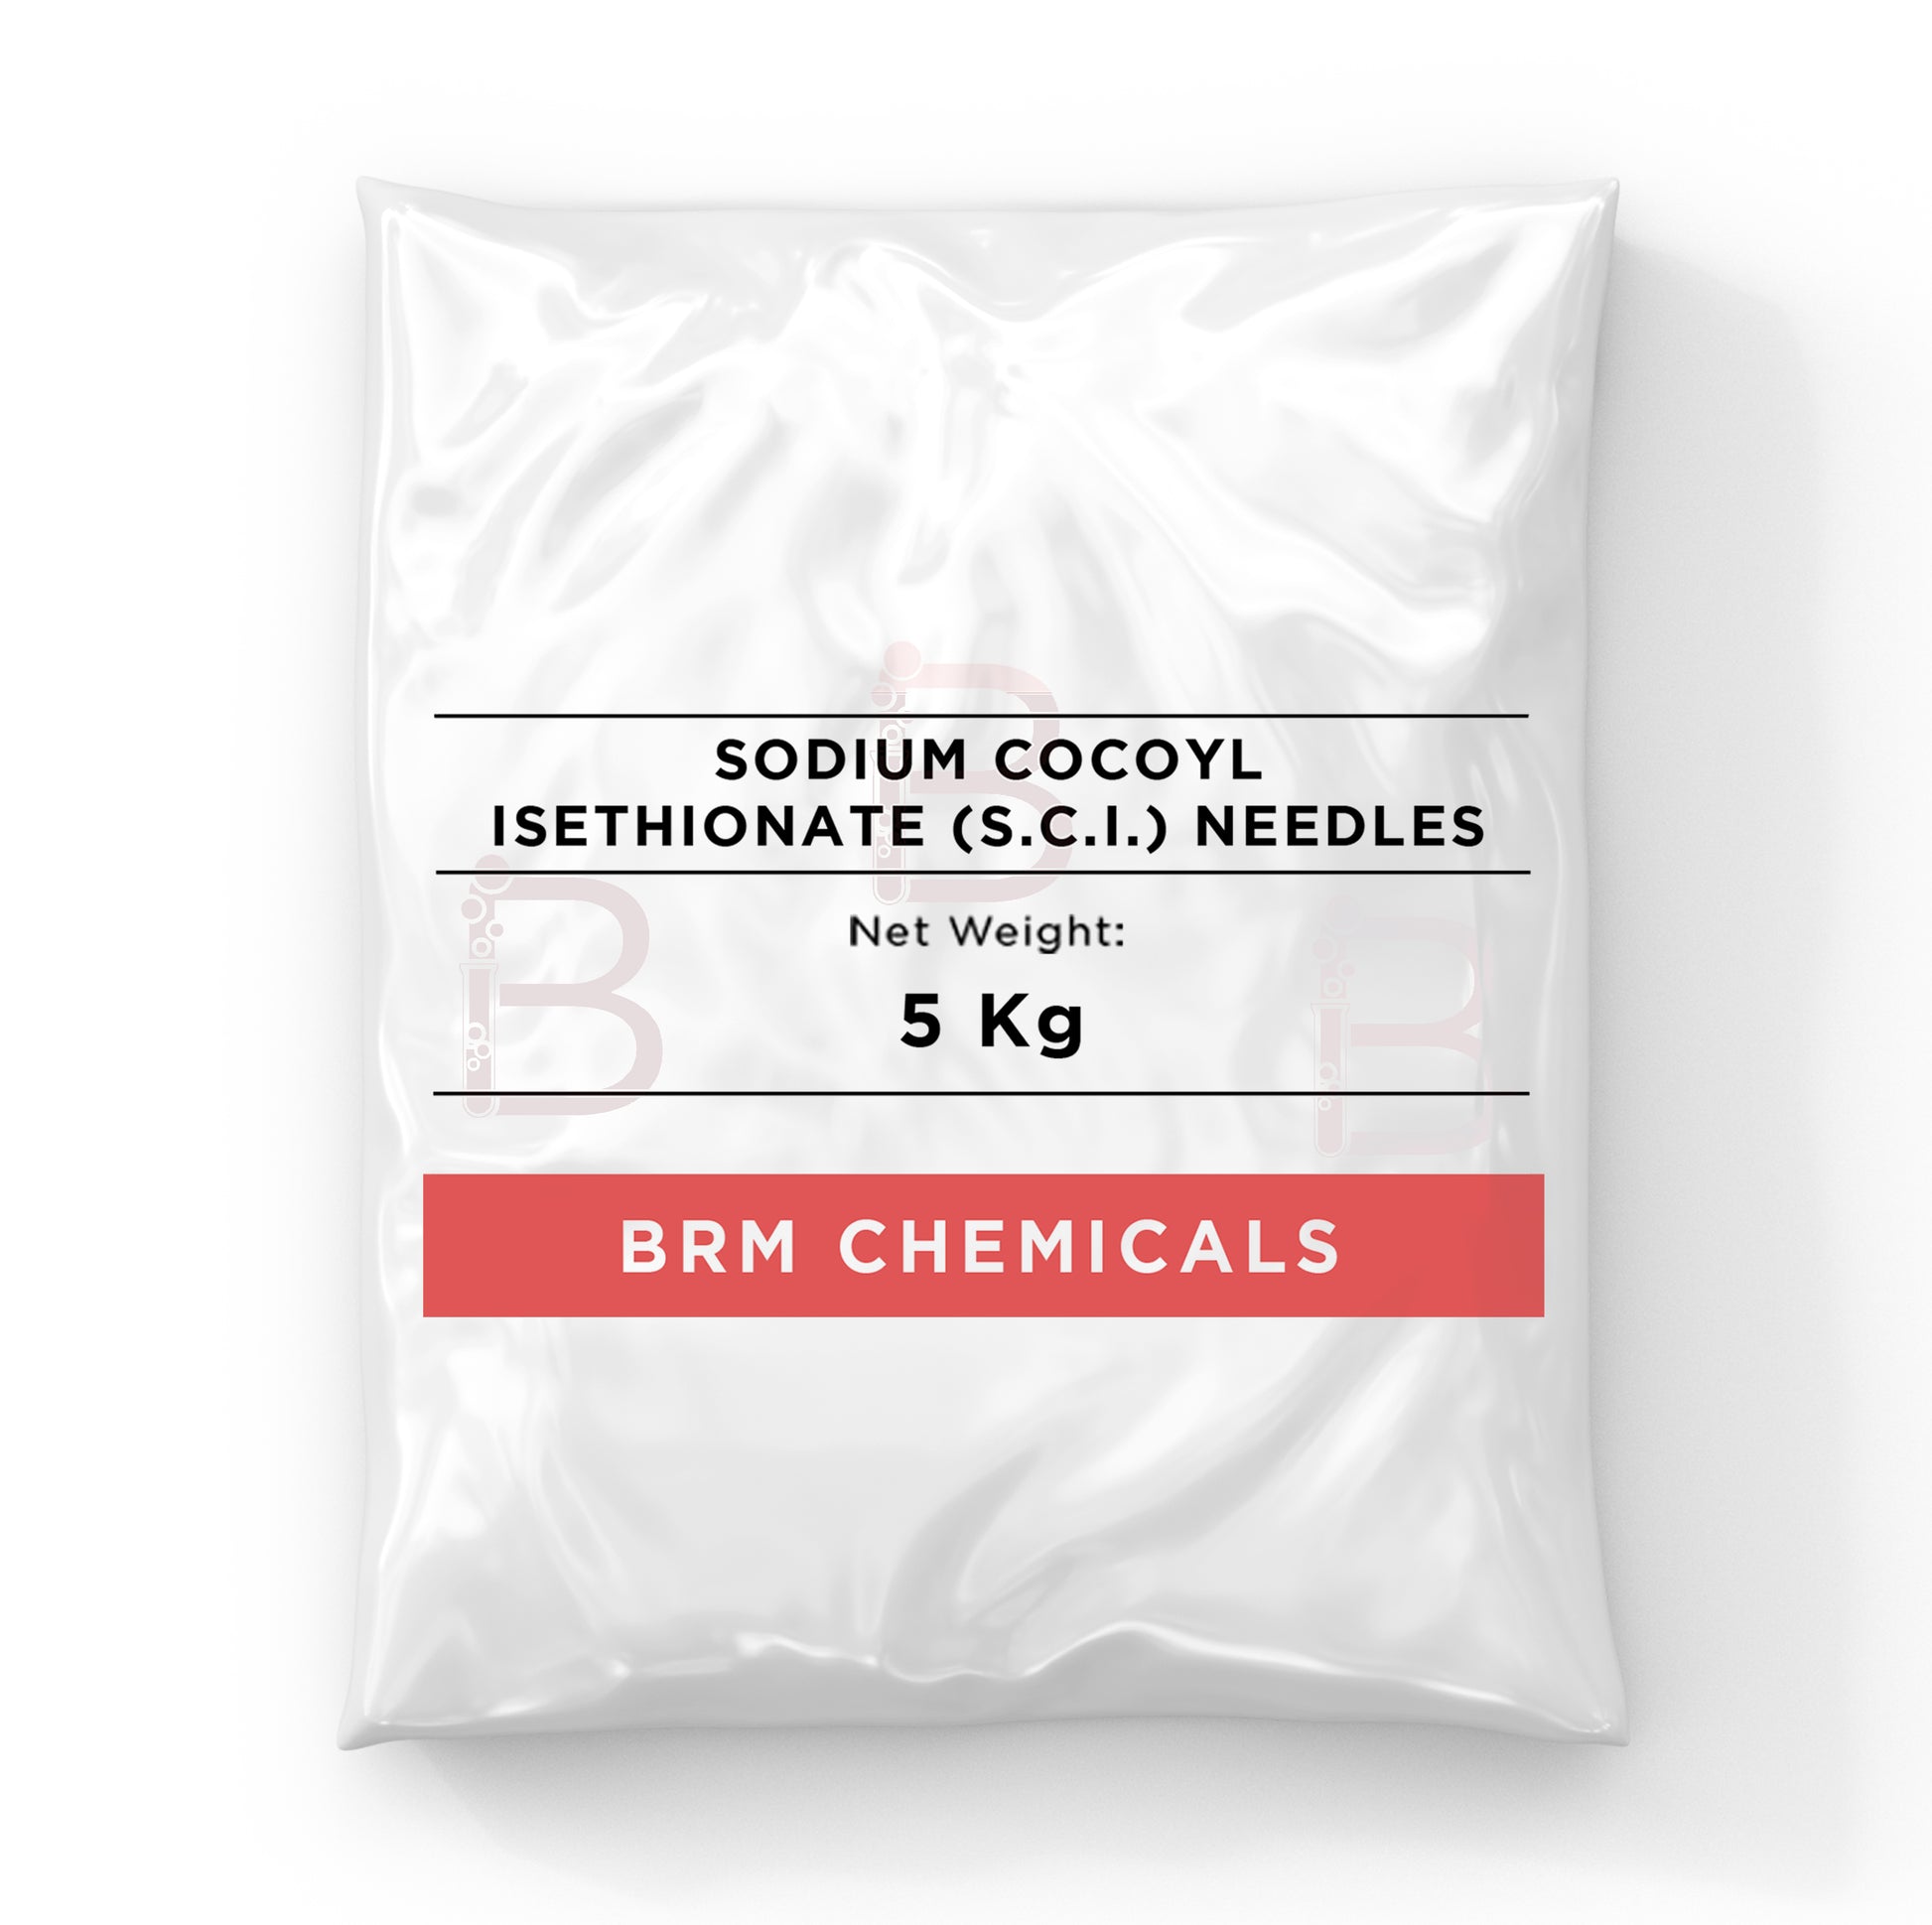 SCI Needles (Sodium Cocoyl Isethionate)